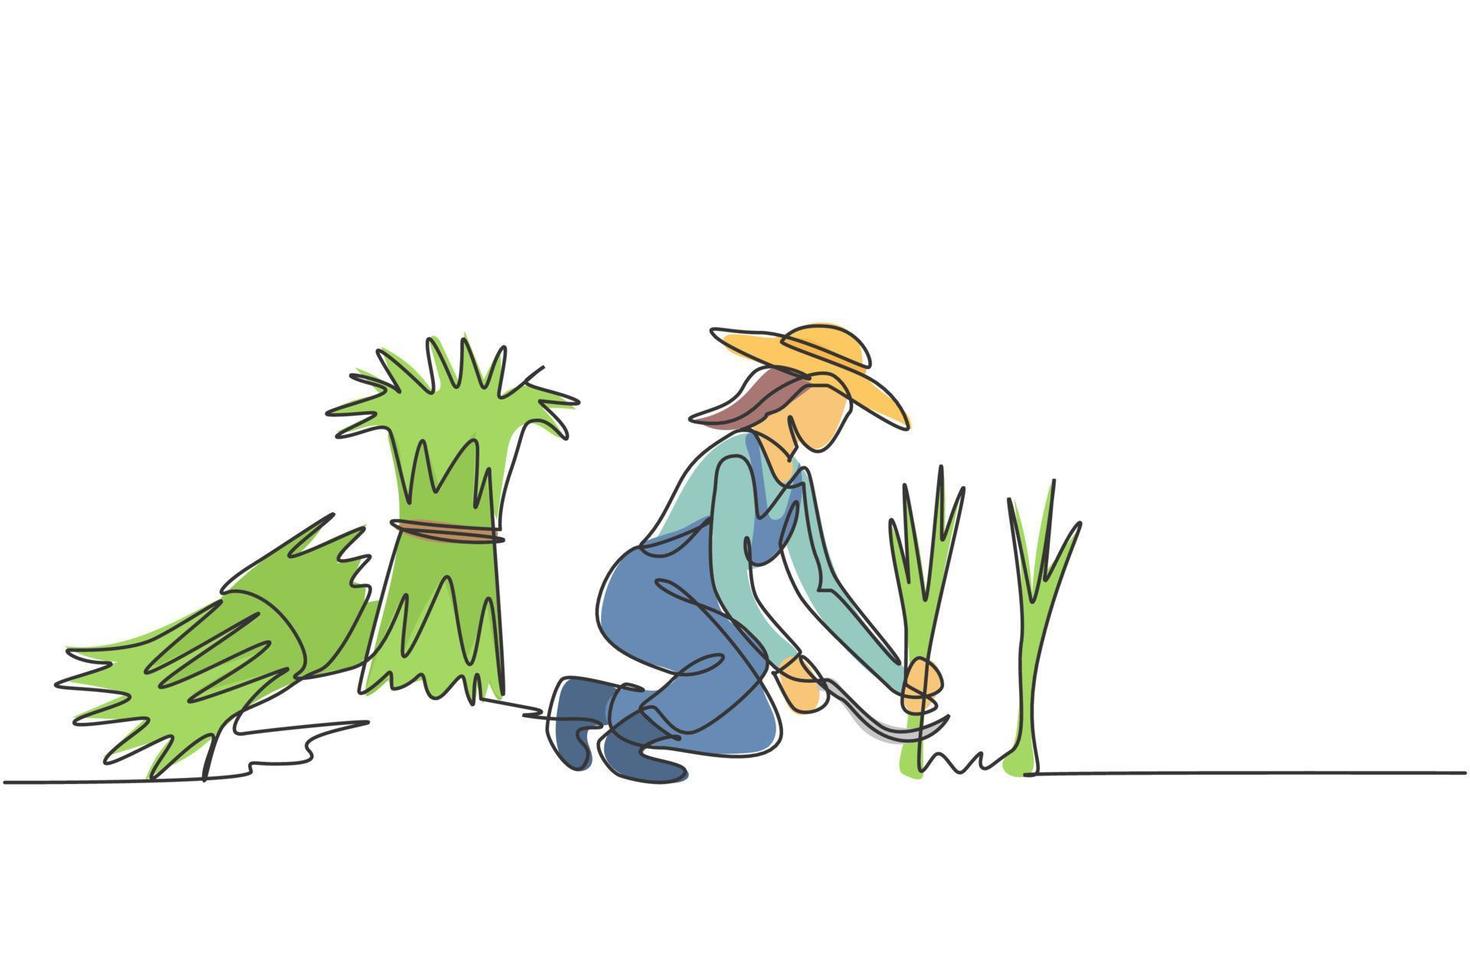 dibujo de línea continua única joven agricultora estaba cosechando arroz y también había arroz amarrado. concepto de minimalismo agrícola. Ilustración de vector de diseño gráfico de dibujo de una línea.